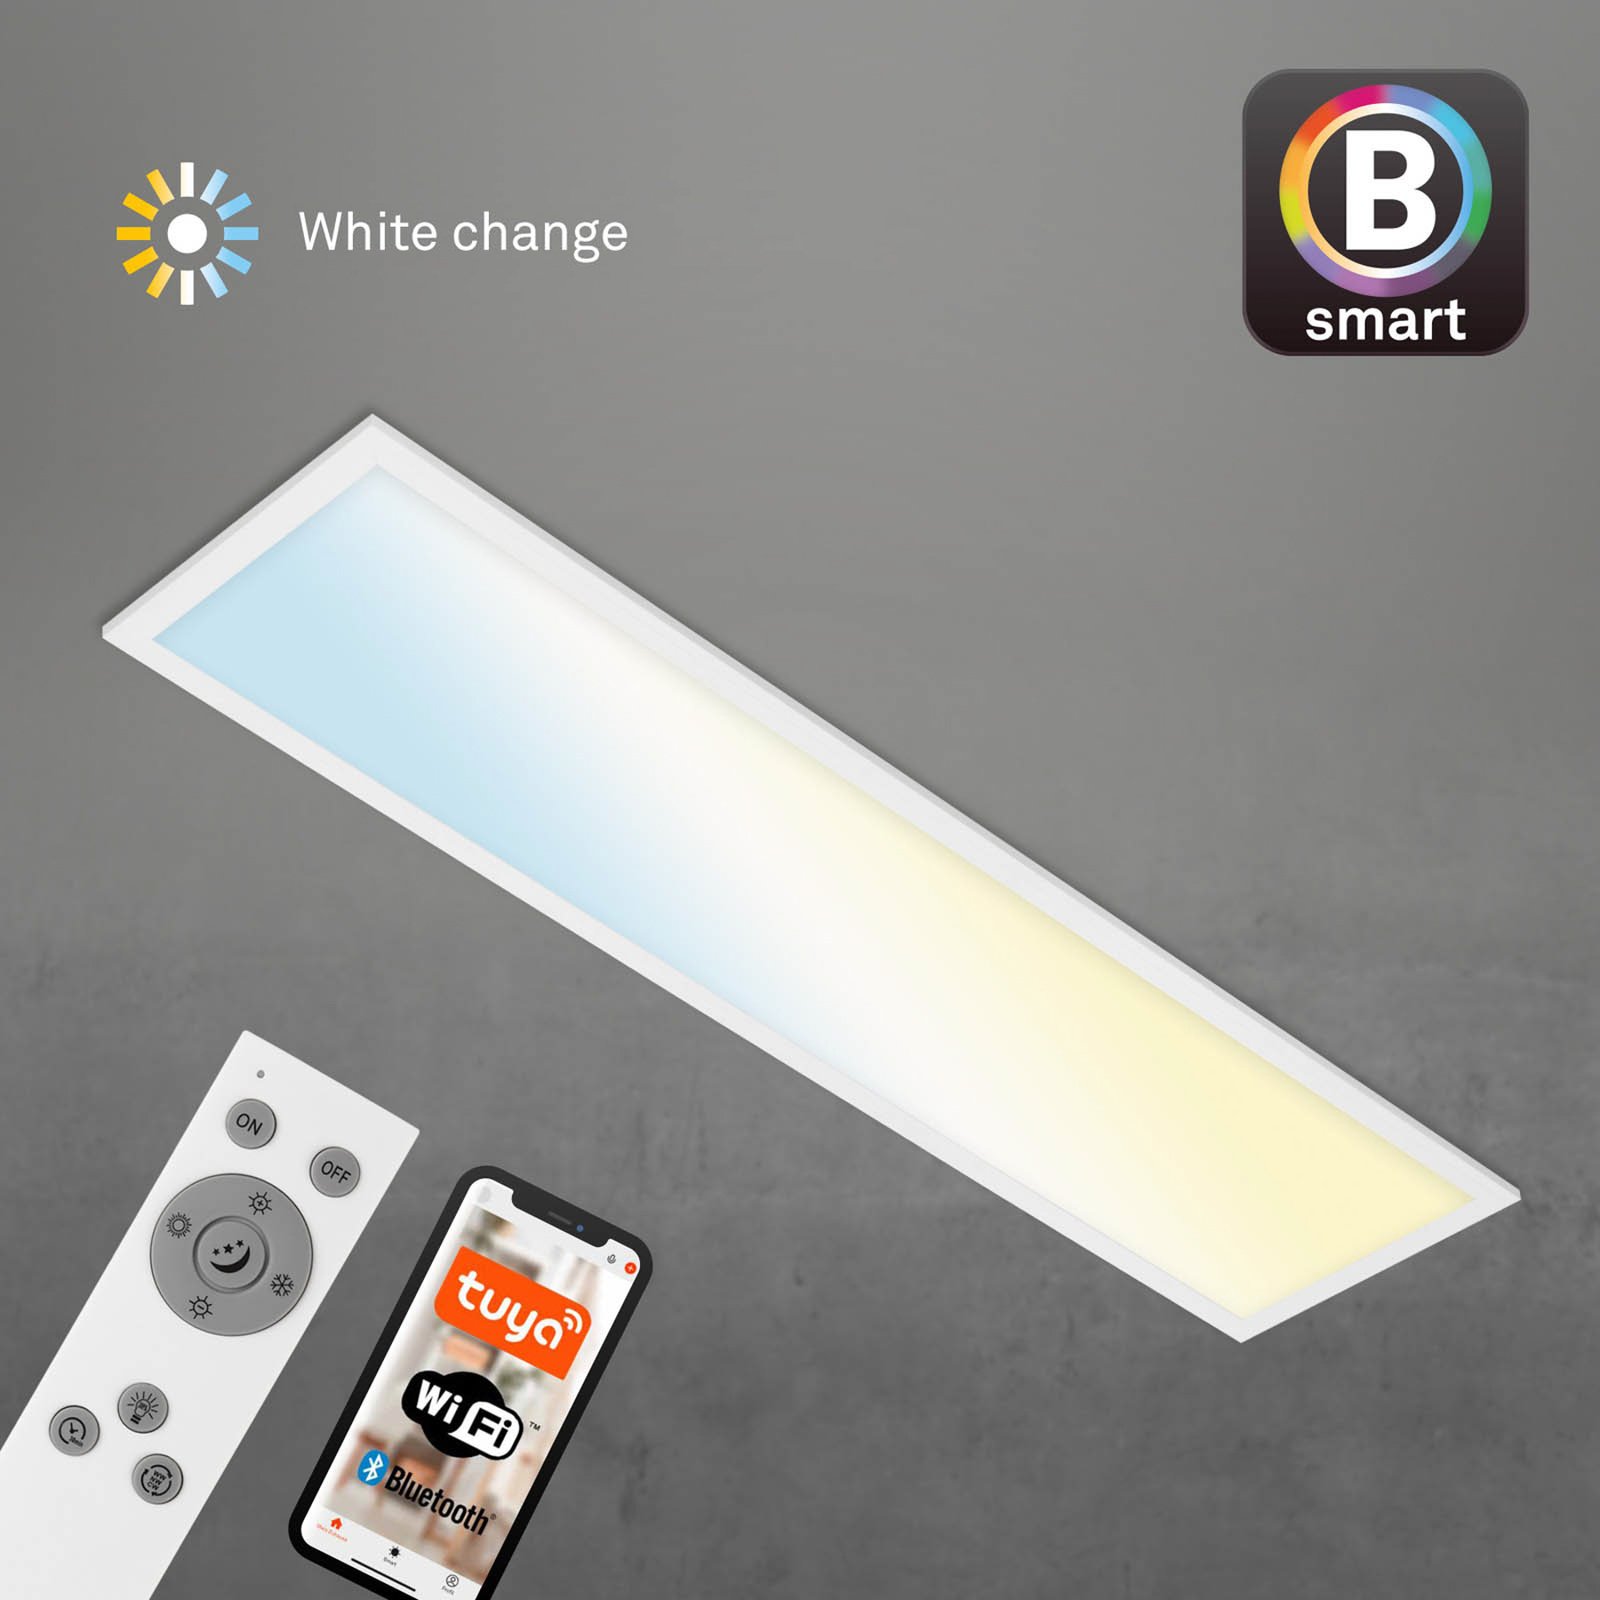 LED stropní svítidlo Piatto S stmívatelné CCT bílé 100x25cm